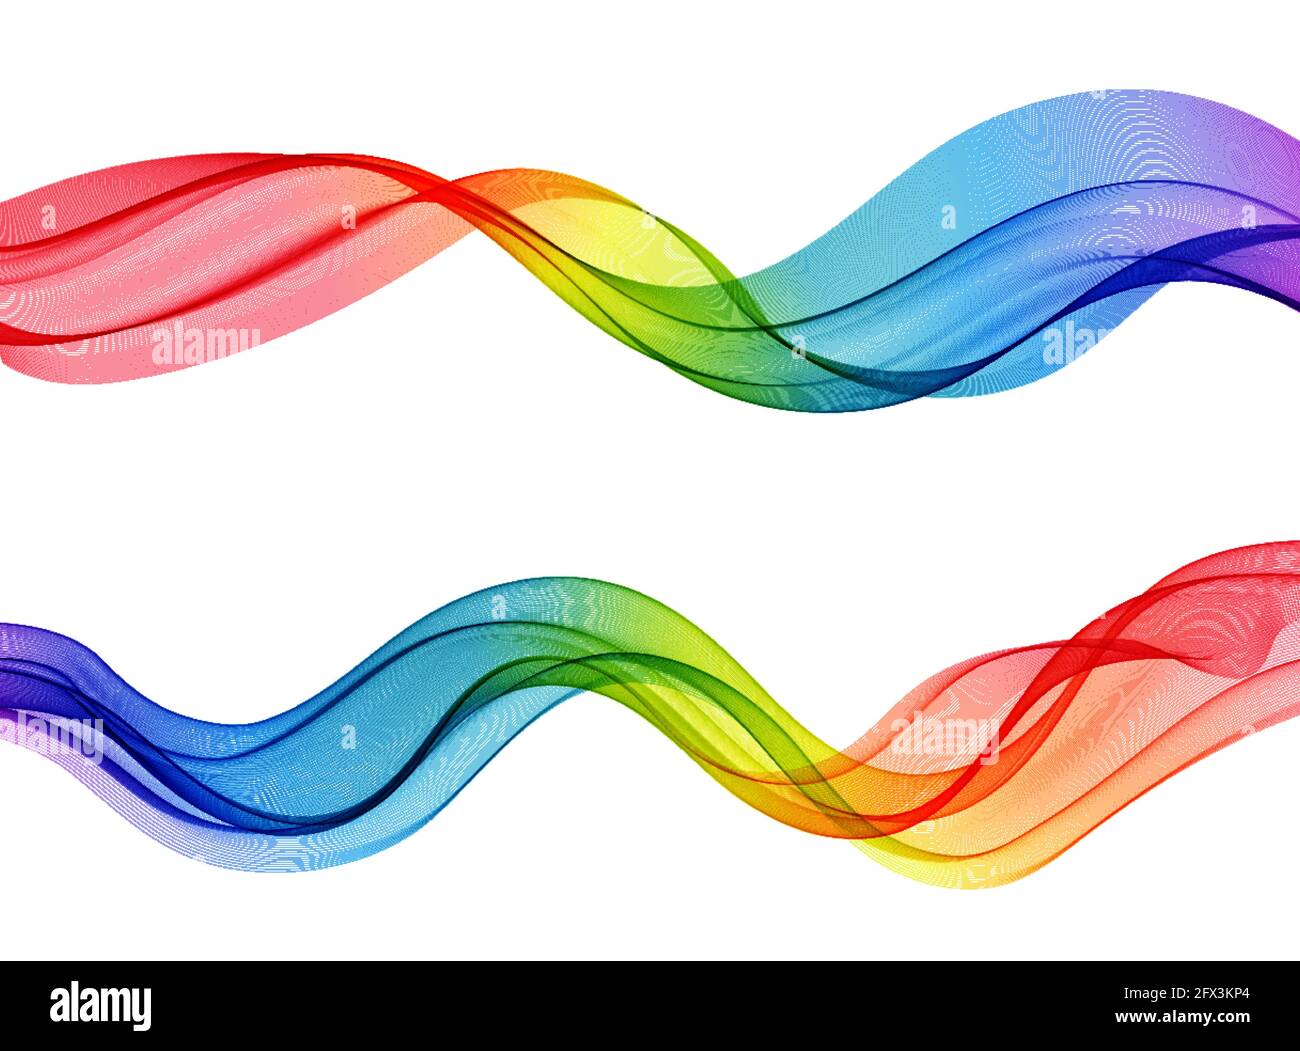 Vettore astratto linee colorate fluenti isolate su sfondo bianco. Elemento di design per la tecnologia, la scienza, la musica o il concetto moderno. Illustrazione Vettoriale